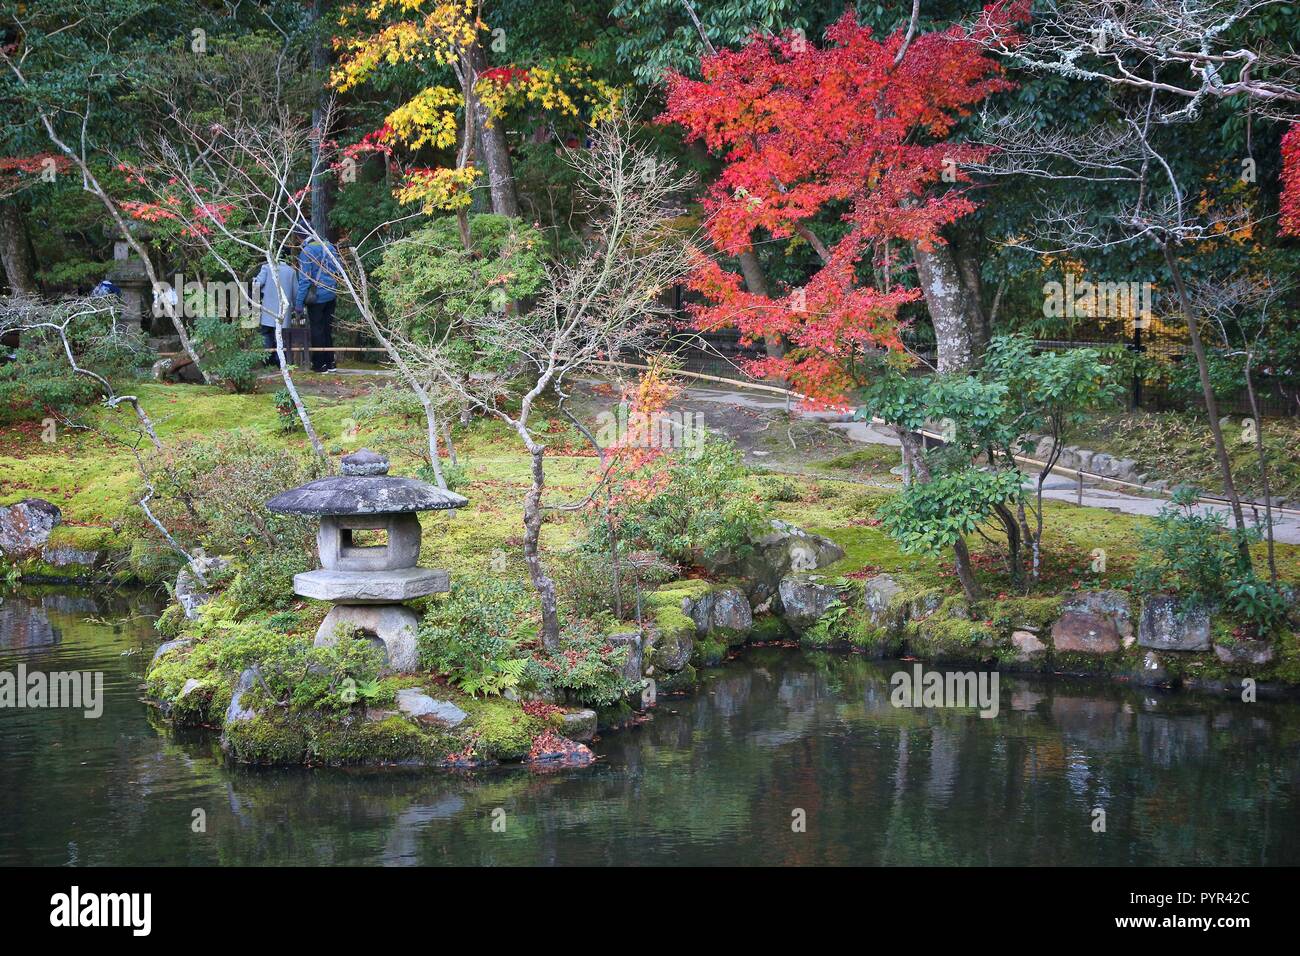 Japanese garden in autumn - Isuien Garden of Nara, Japan. Stock Photo